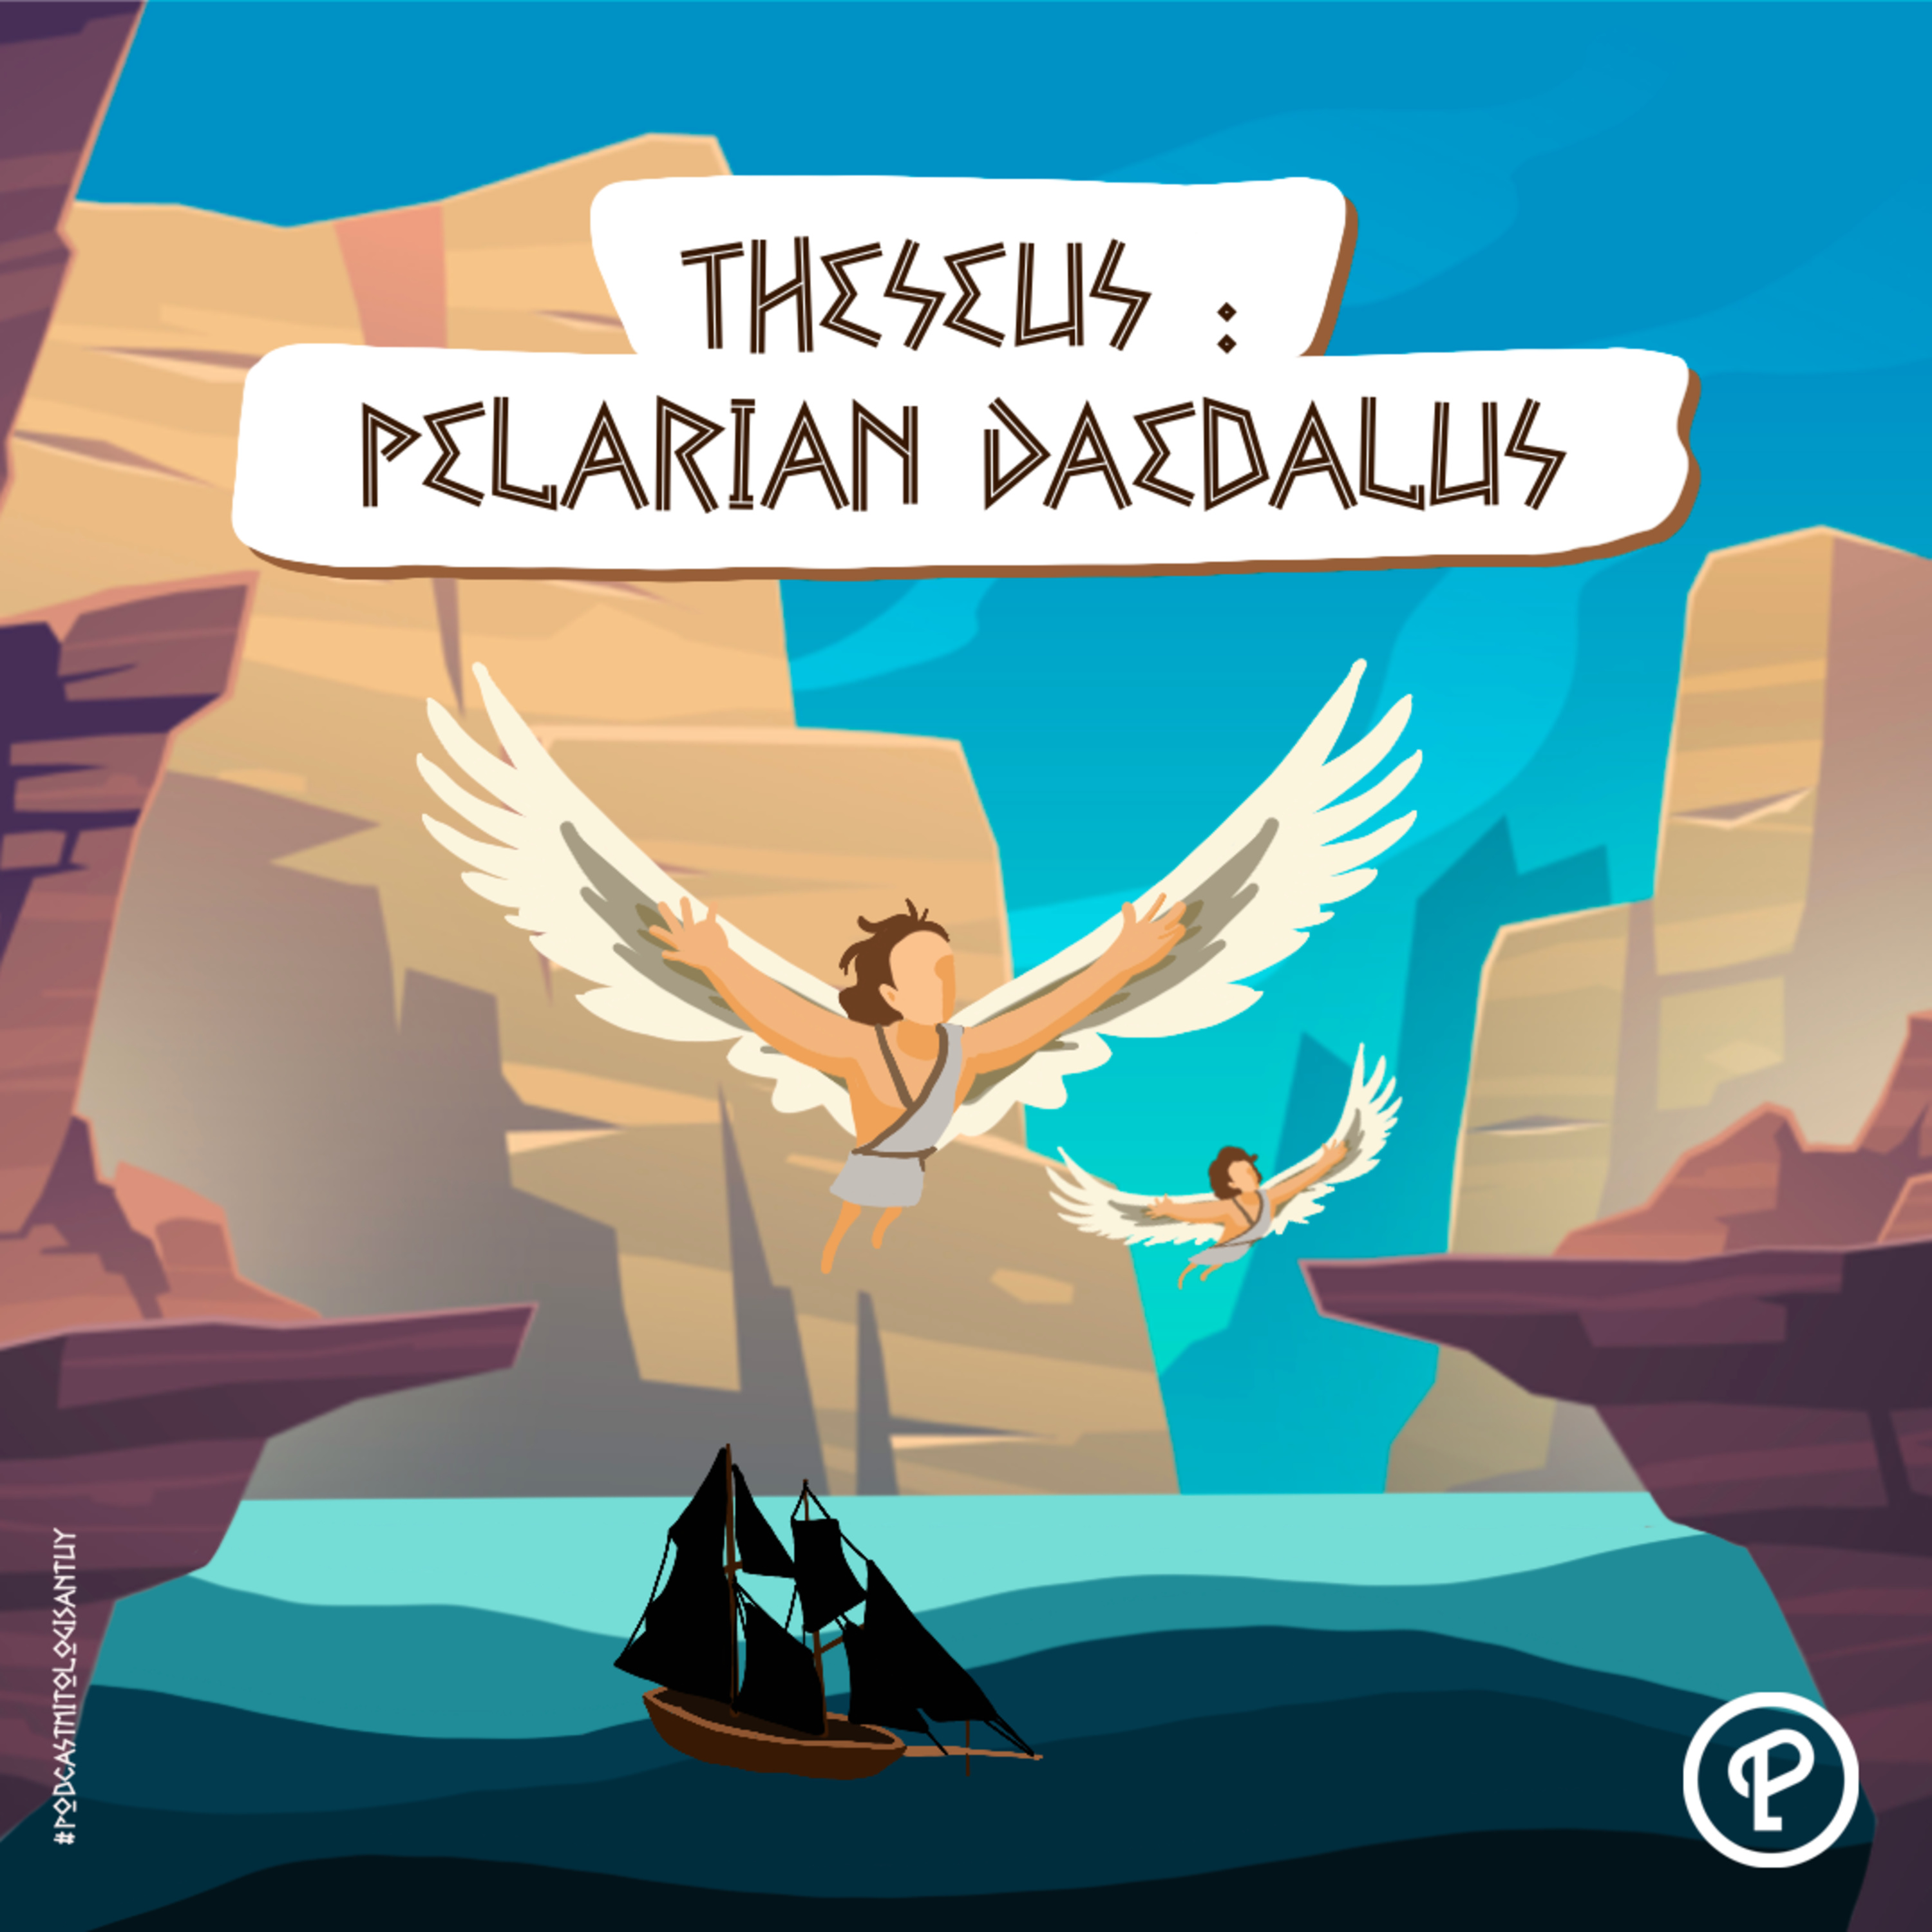 Theseus : Pelarian Daedalus